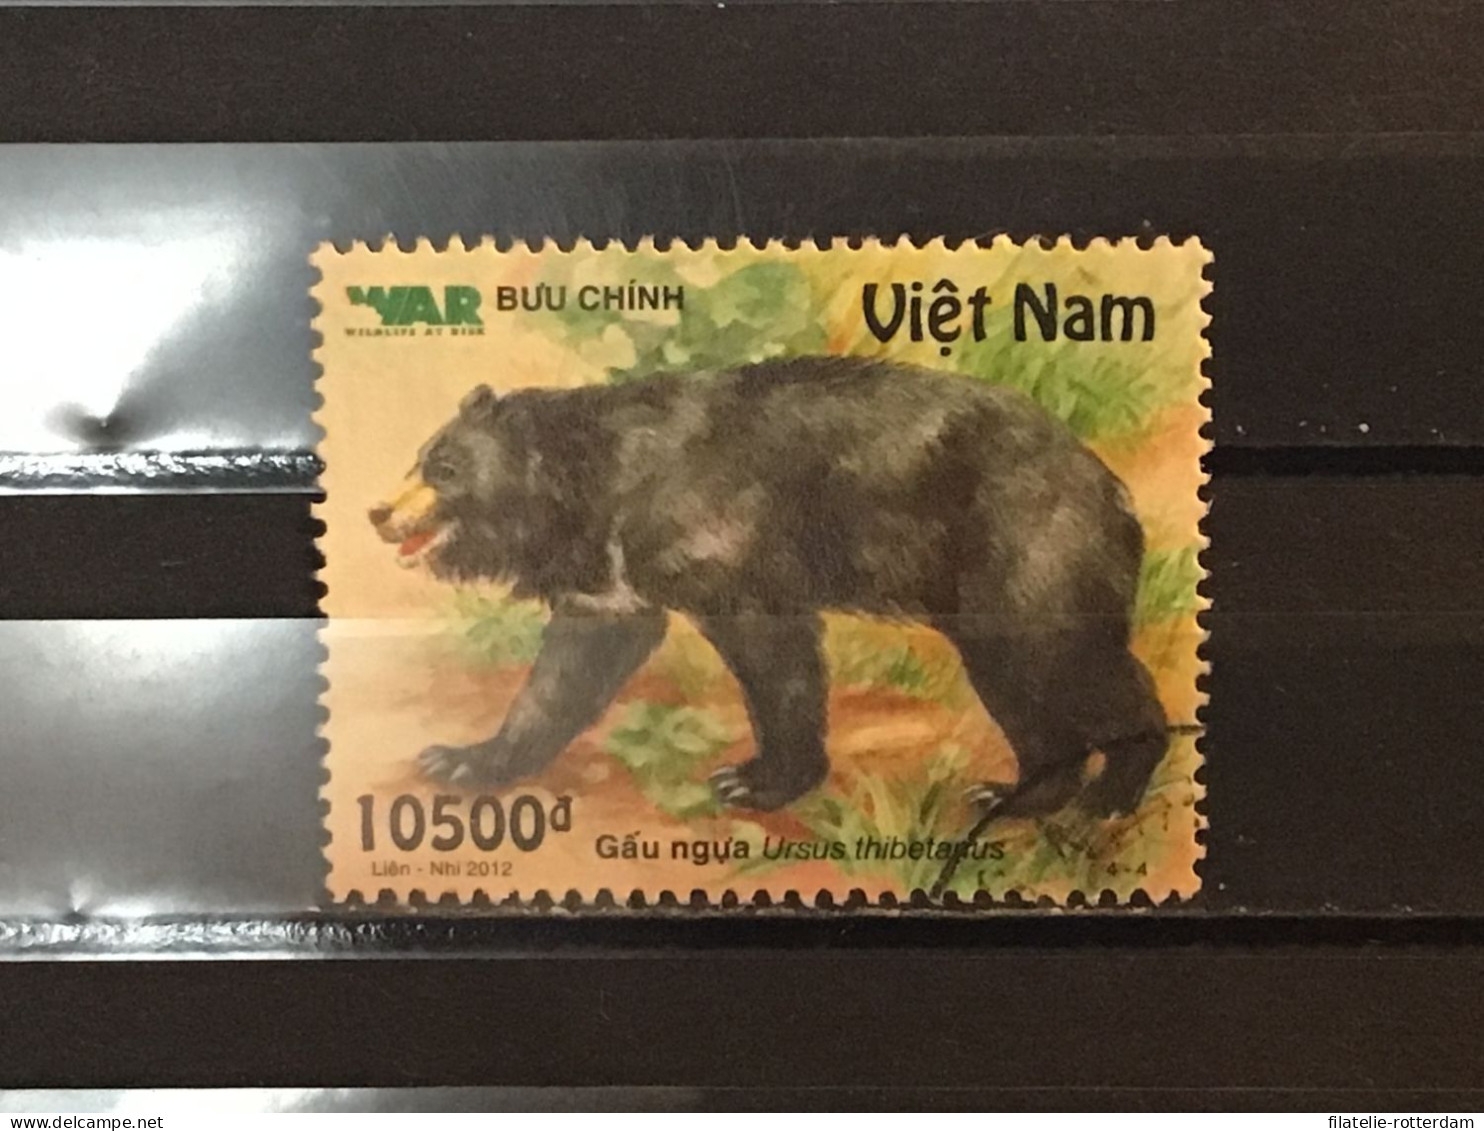 Vietnam - Bears (10500) 2012 - Vietnam